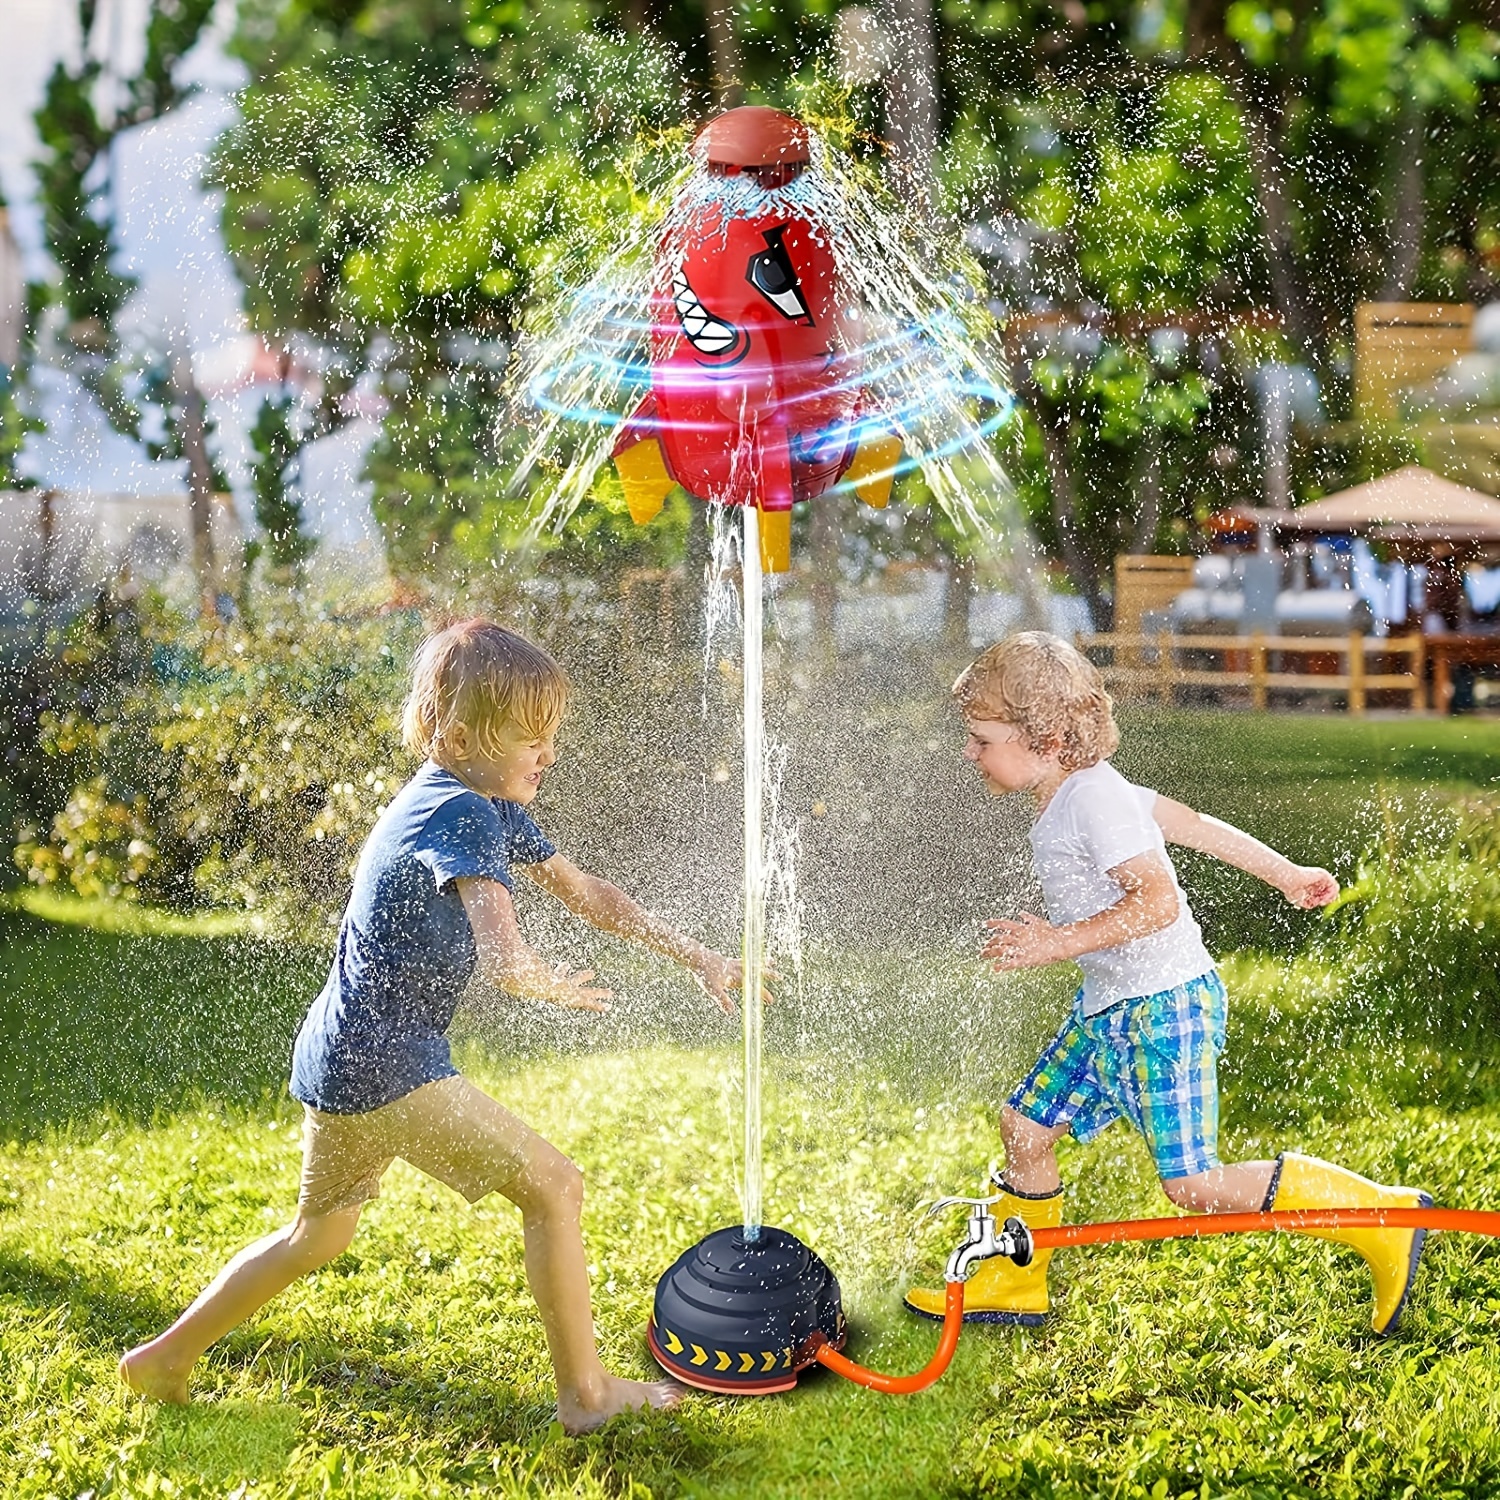 Piscine gonflable en forme de crocodile pour enfants, pataugeoire,  fontaine, jouet, parc aquatique, océan, bébé